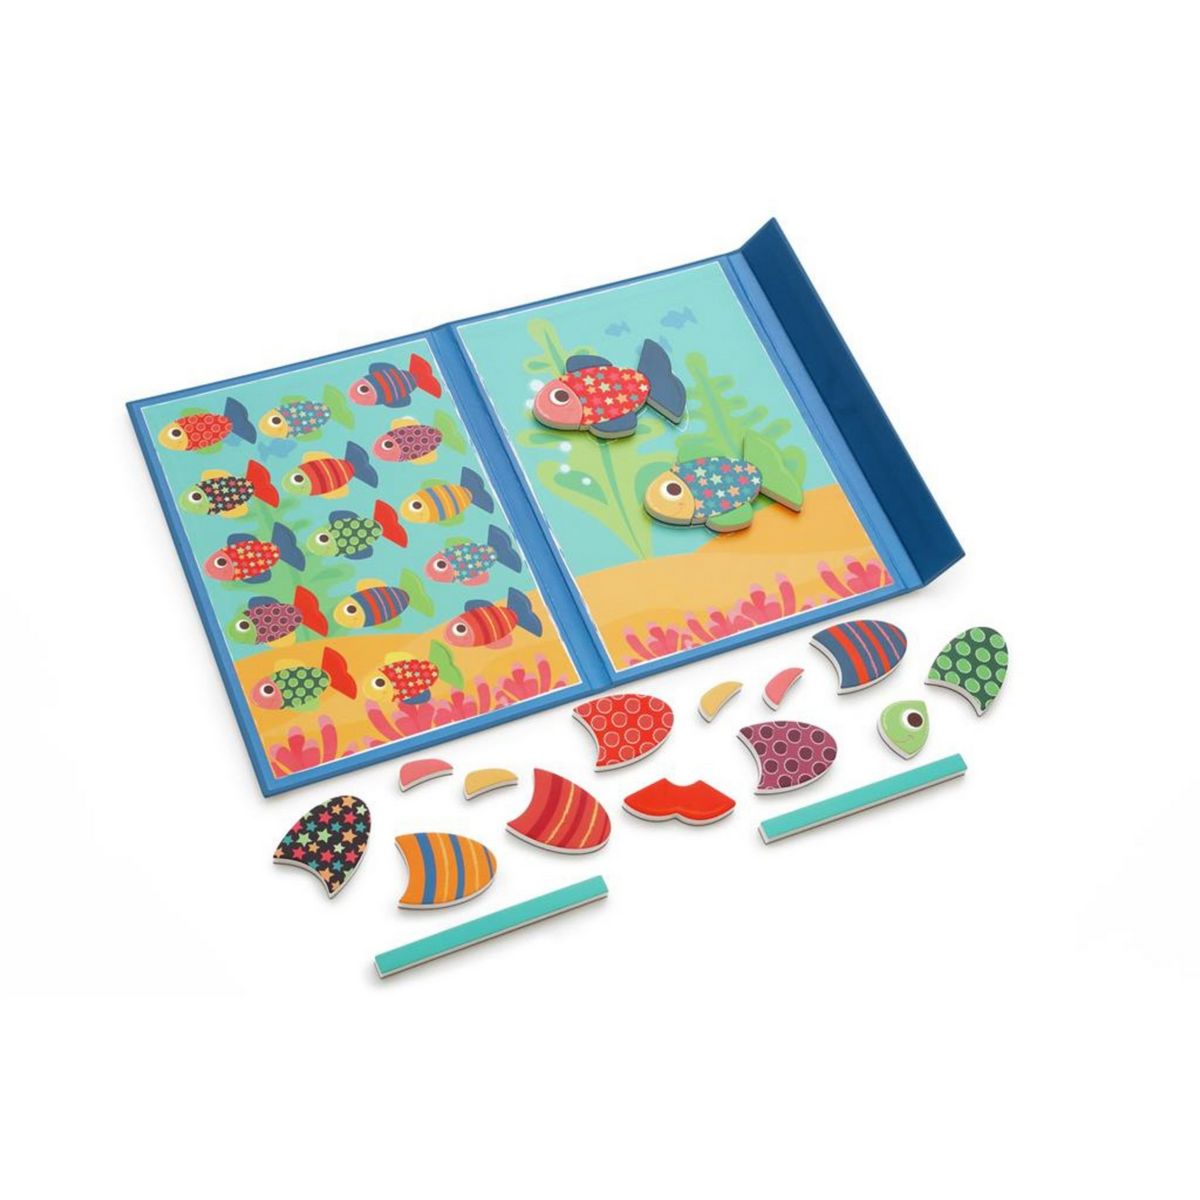 scratch livre edulogic poissons un jeu enfant une idee cadeau chez ugo et lea (5)